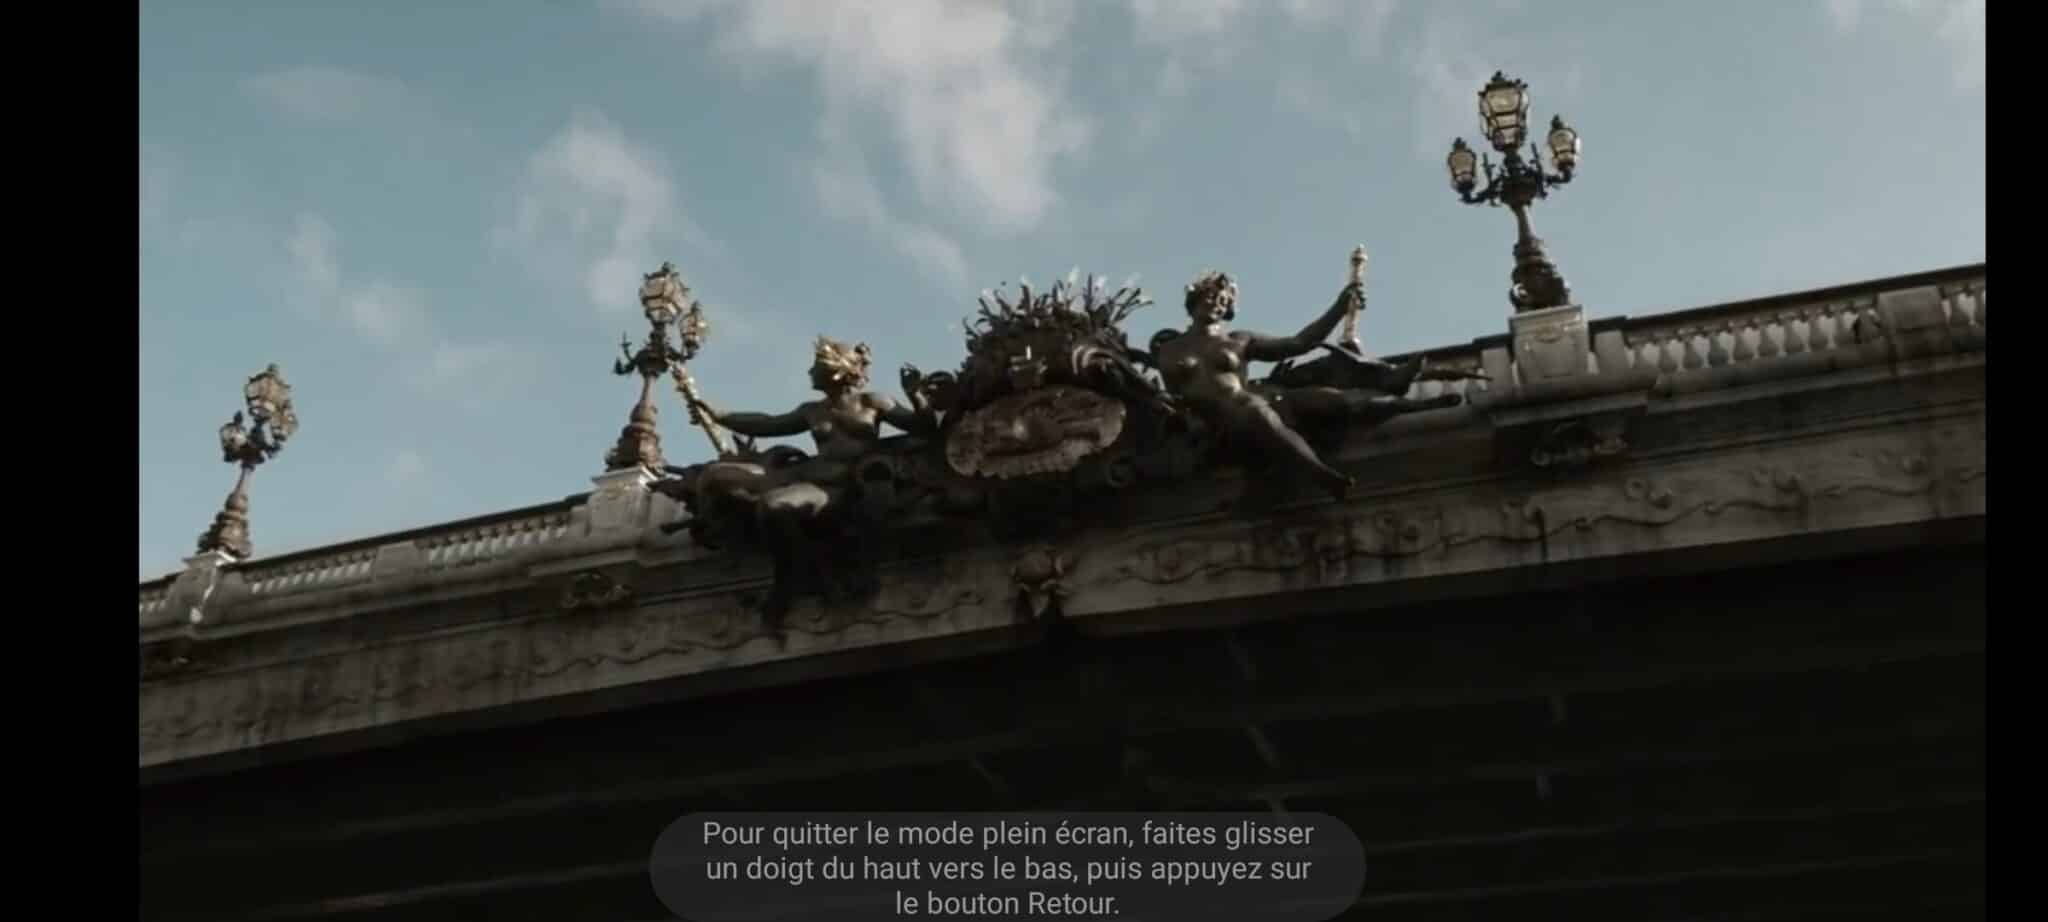 Pont Alexandre III, The Walking Dead, Paris, les zombies à Paris